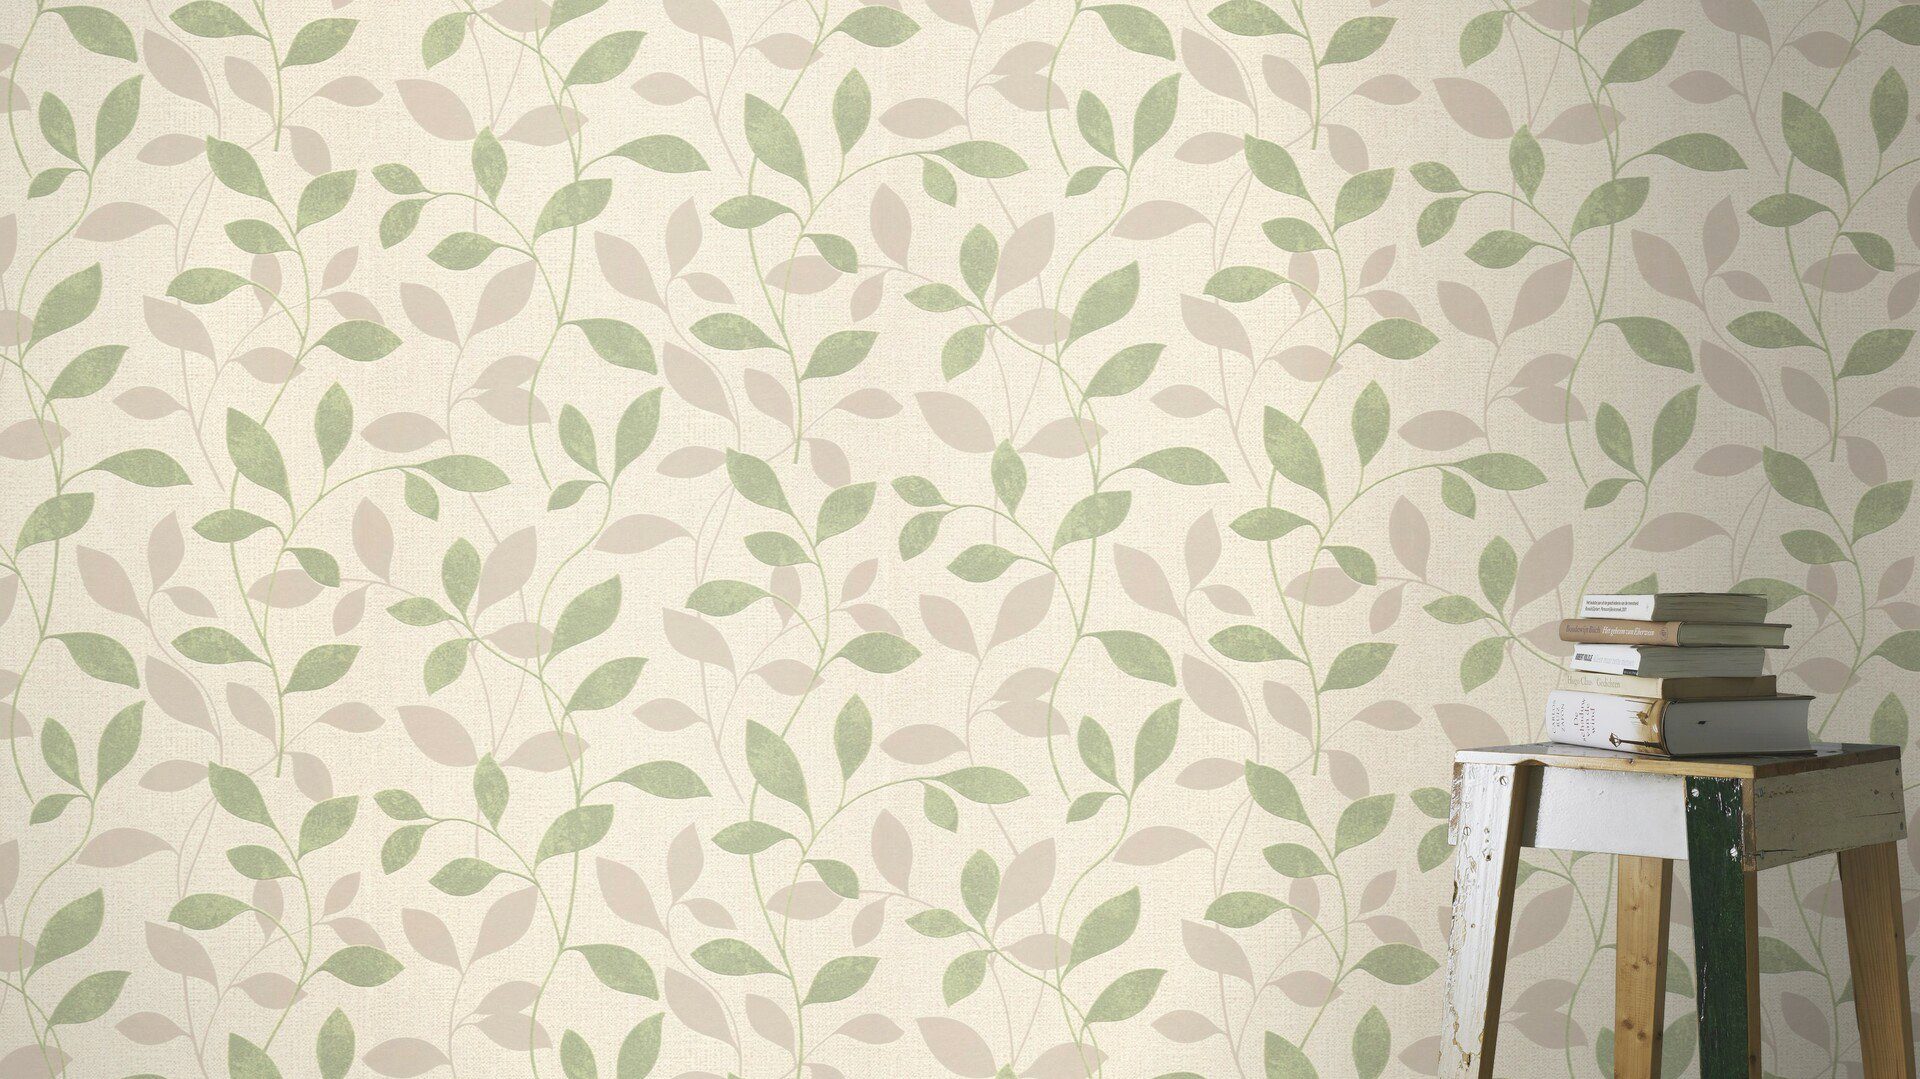 gut (1 Rasch lichtbeständig, Andy hochwaschbeständig floral, Vliestapete Wand, grün/beige strukturiert, St),